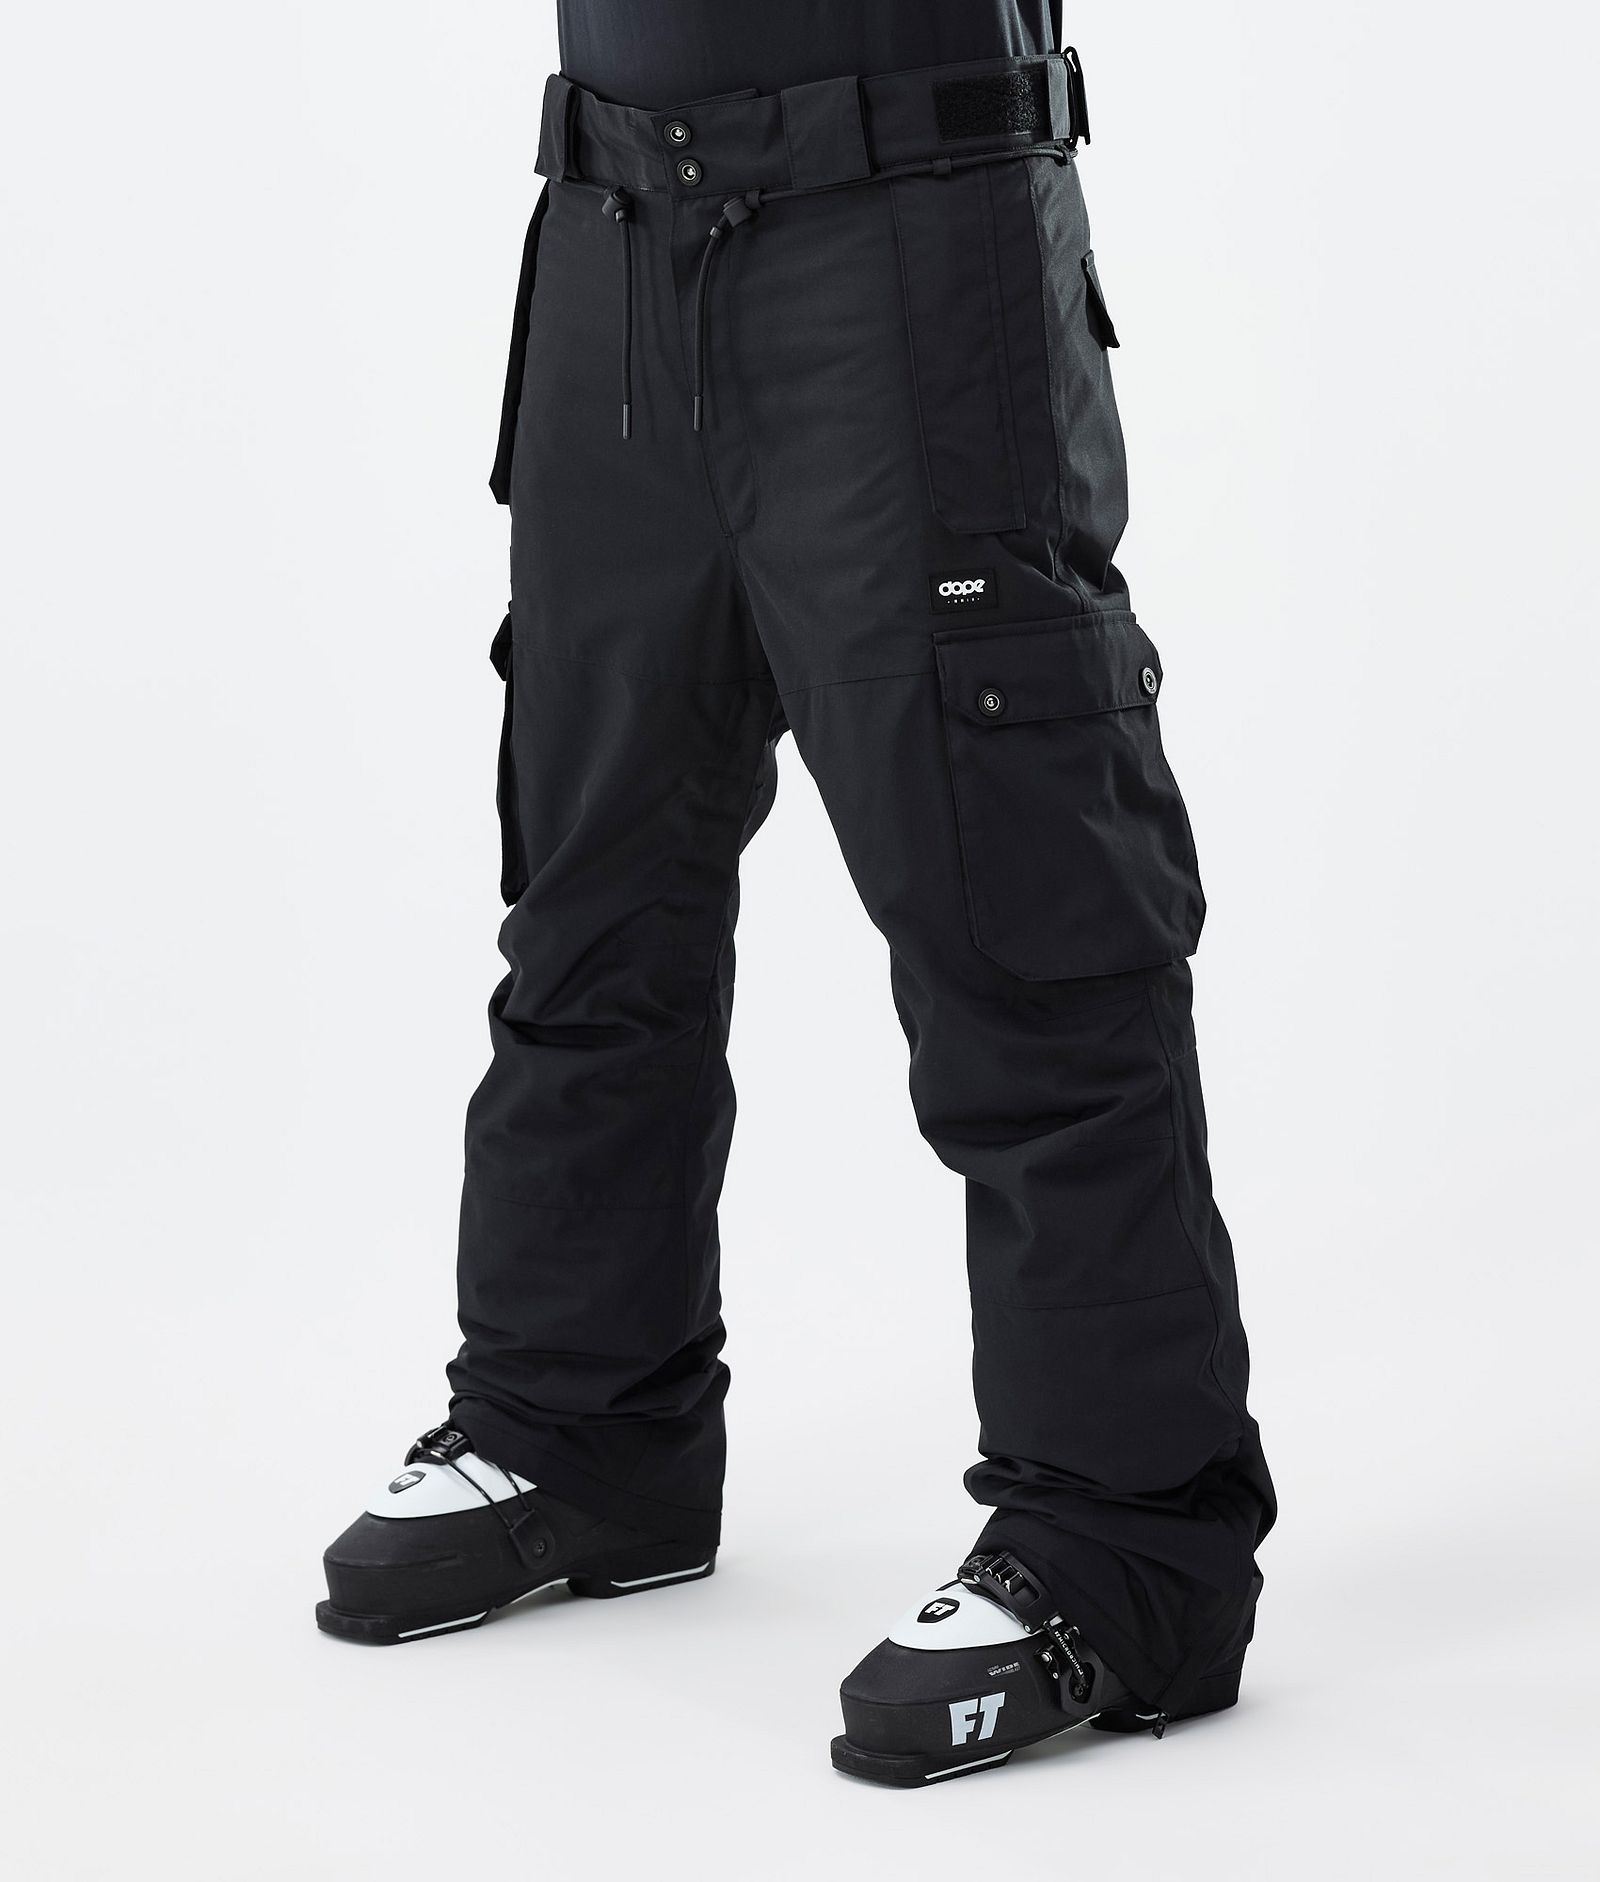 Iconic Pantalon de Ski Homme Blackout, Image 1 sur 7